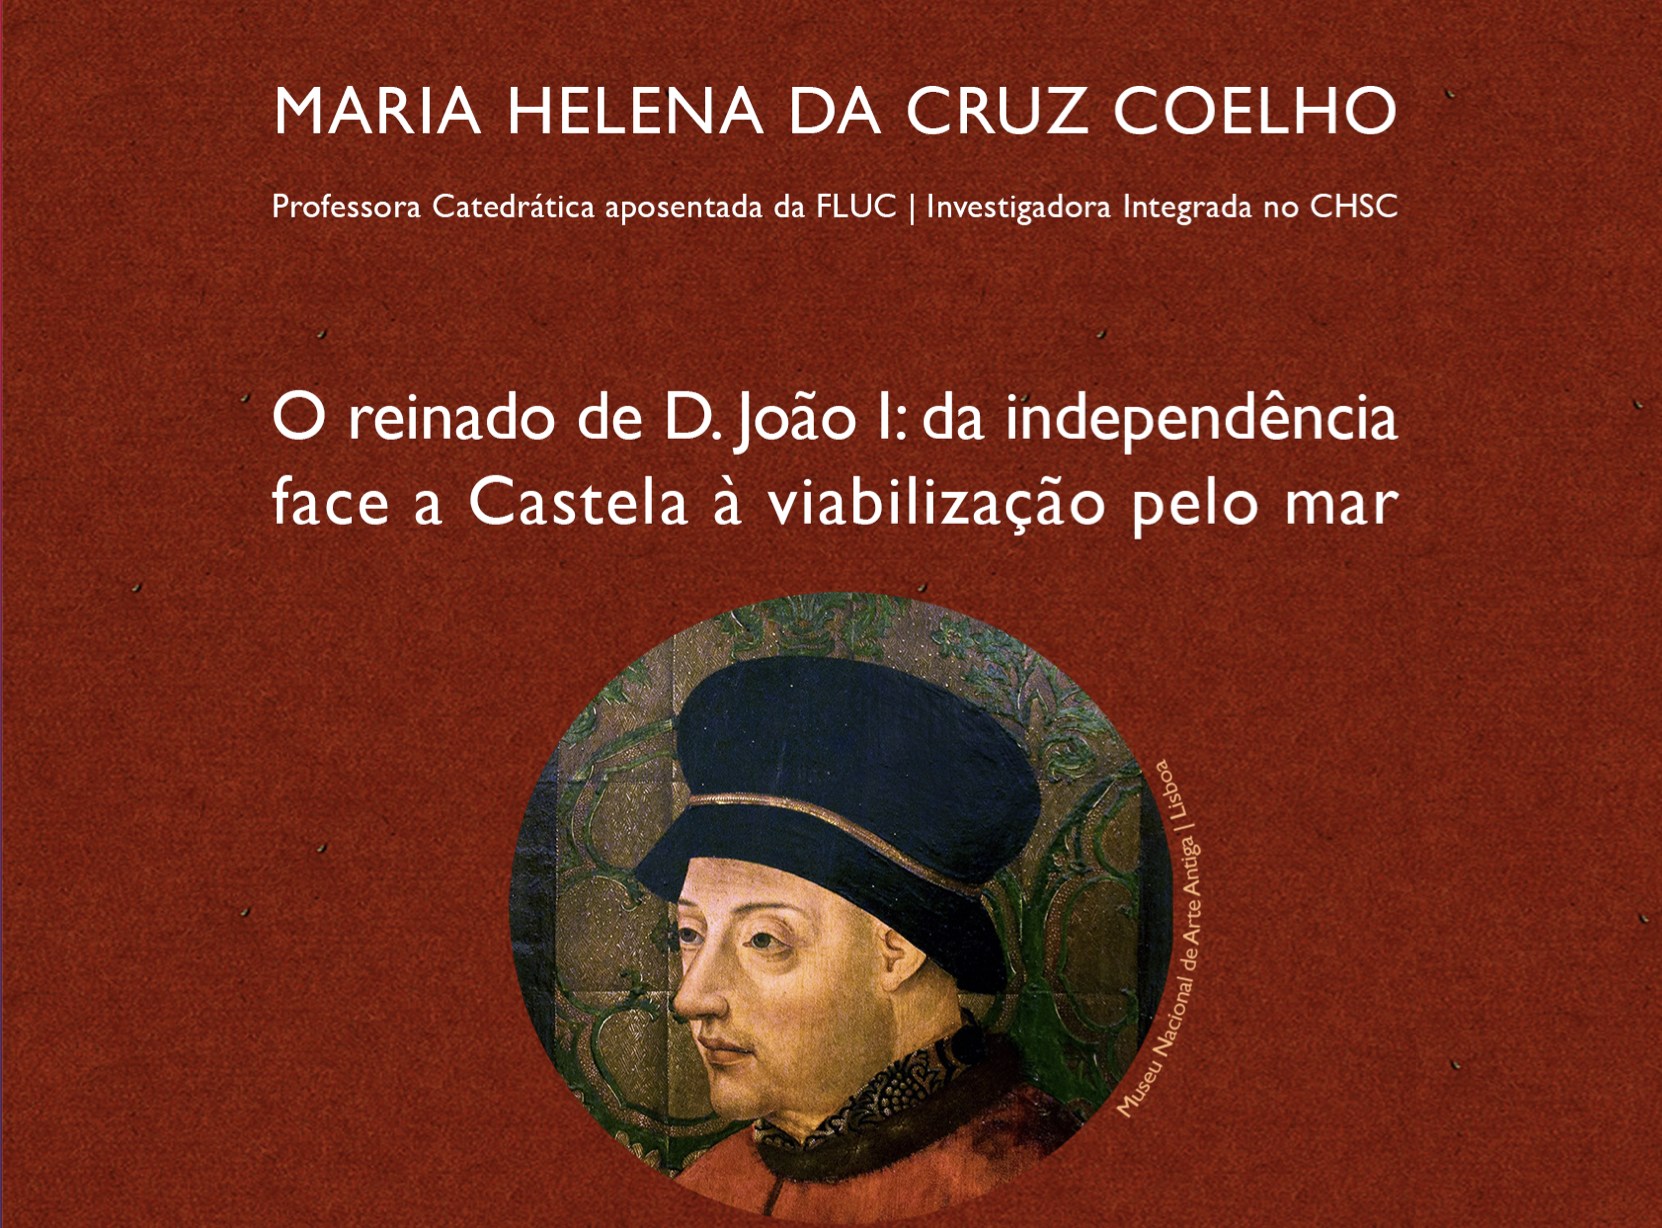 Conferência por Maria Helena da Cruz Coelho: O reinado de D. João I: da independência face a Castela à viabilização pelo mar